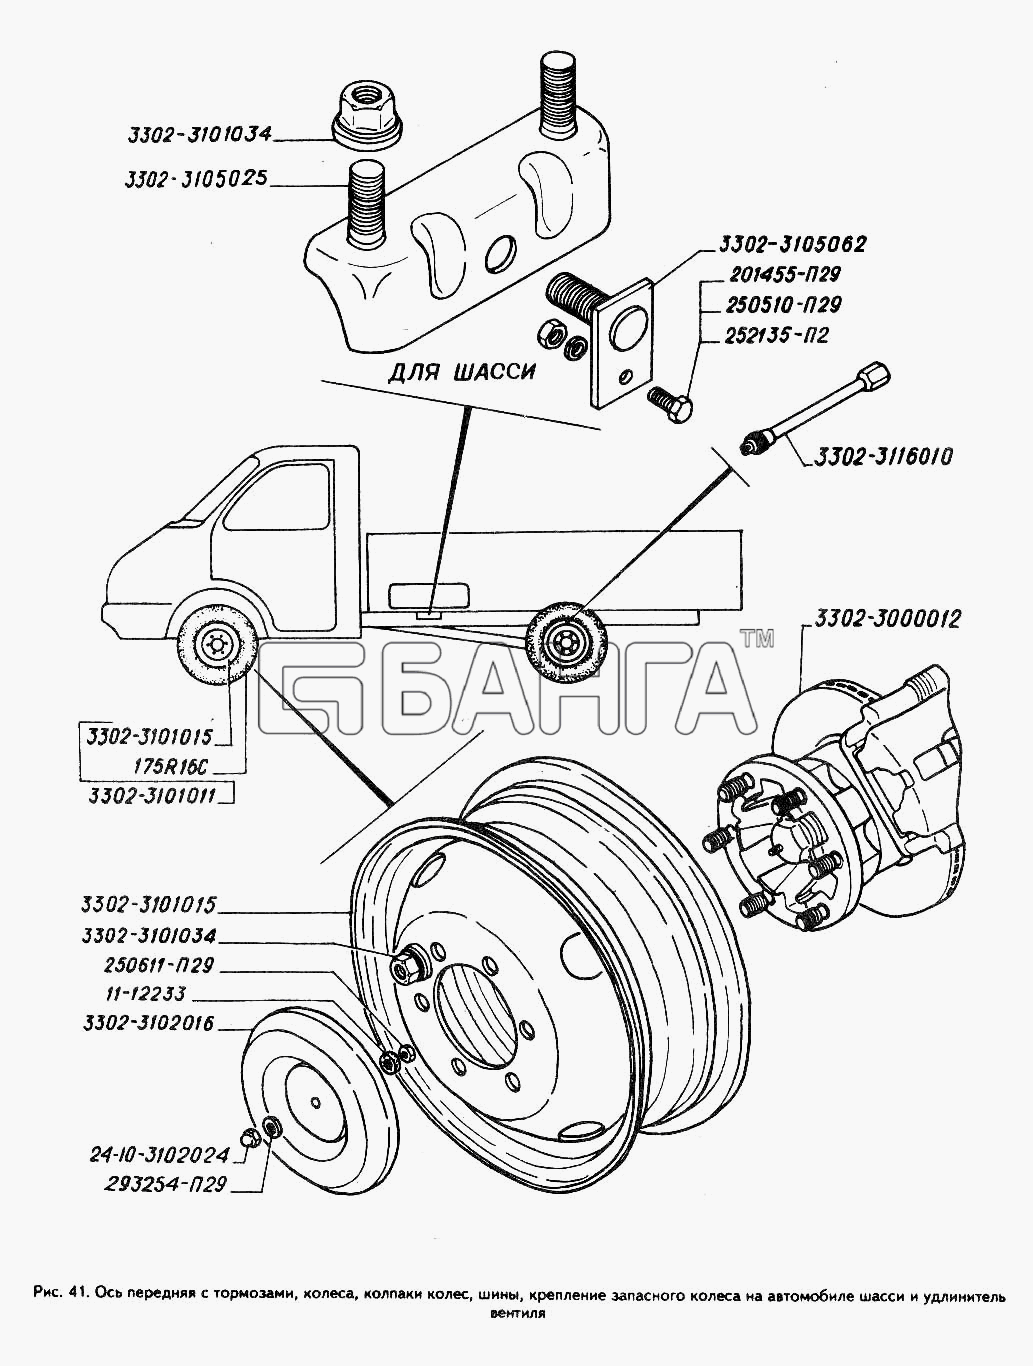 ГАЗ ГАЗ-3302 (ГАЗель) Схема Колеса колпаки колес шины крепление